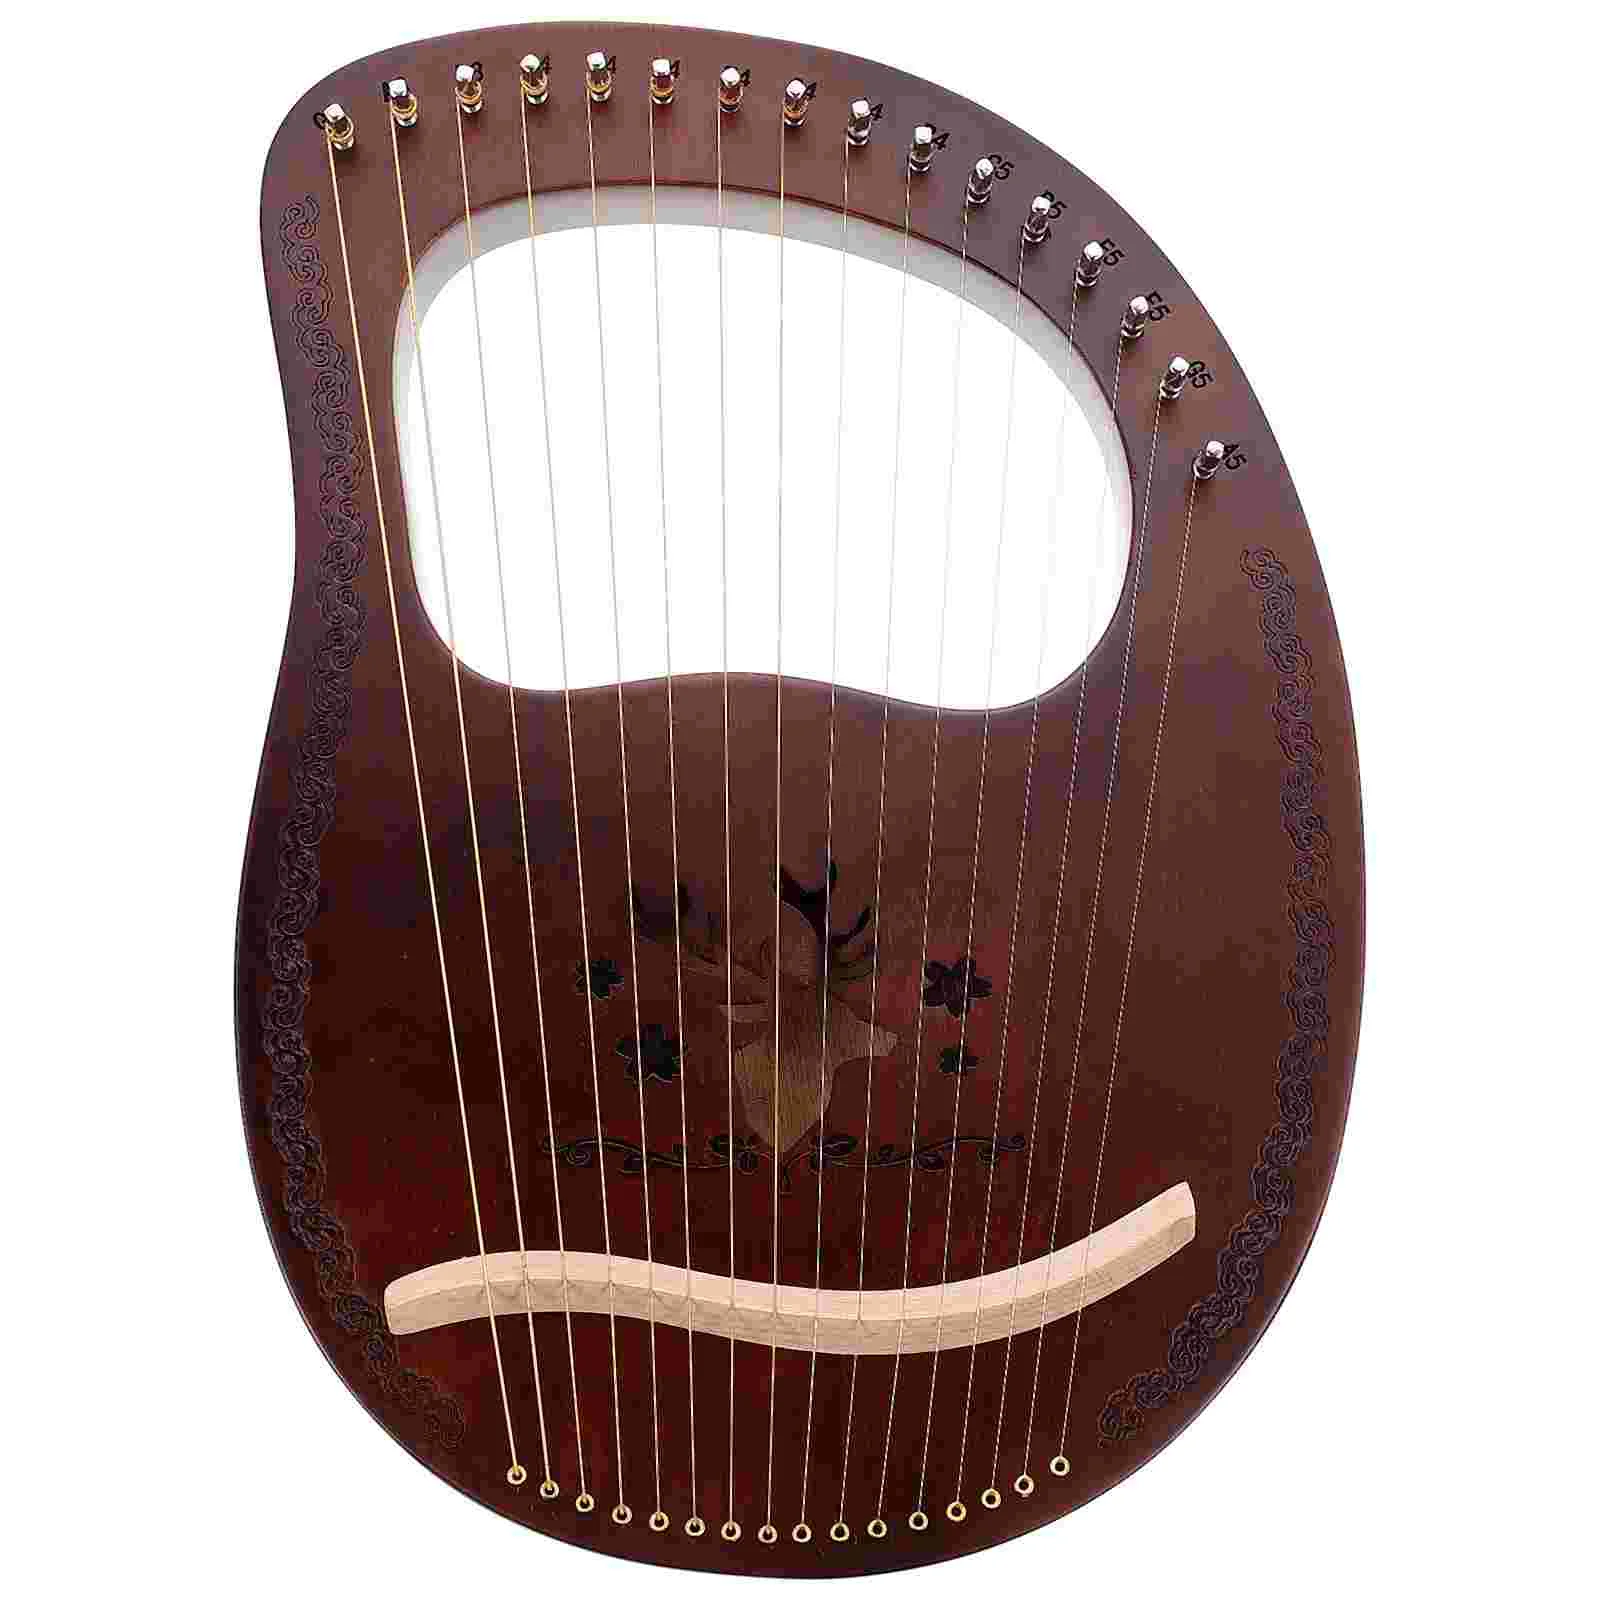 

16 тонов Lyre 16 тонов деревянная Арпа музыкальный инструмент ручной Твердый Деревянный инструмент в старинном стиле